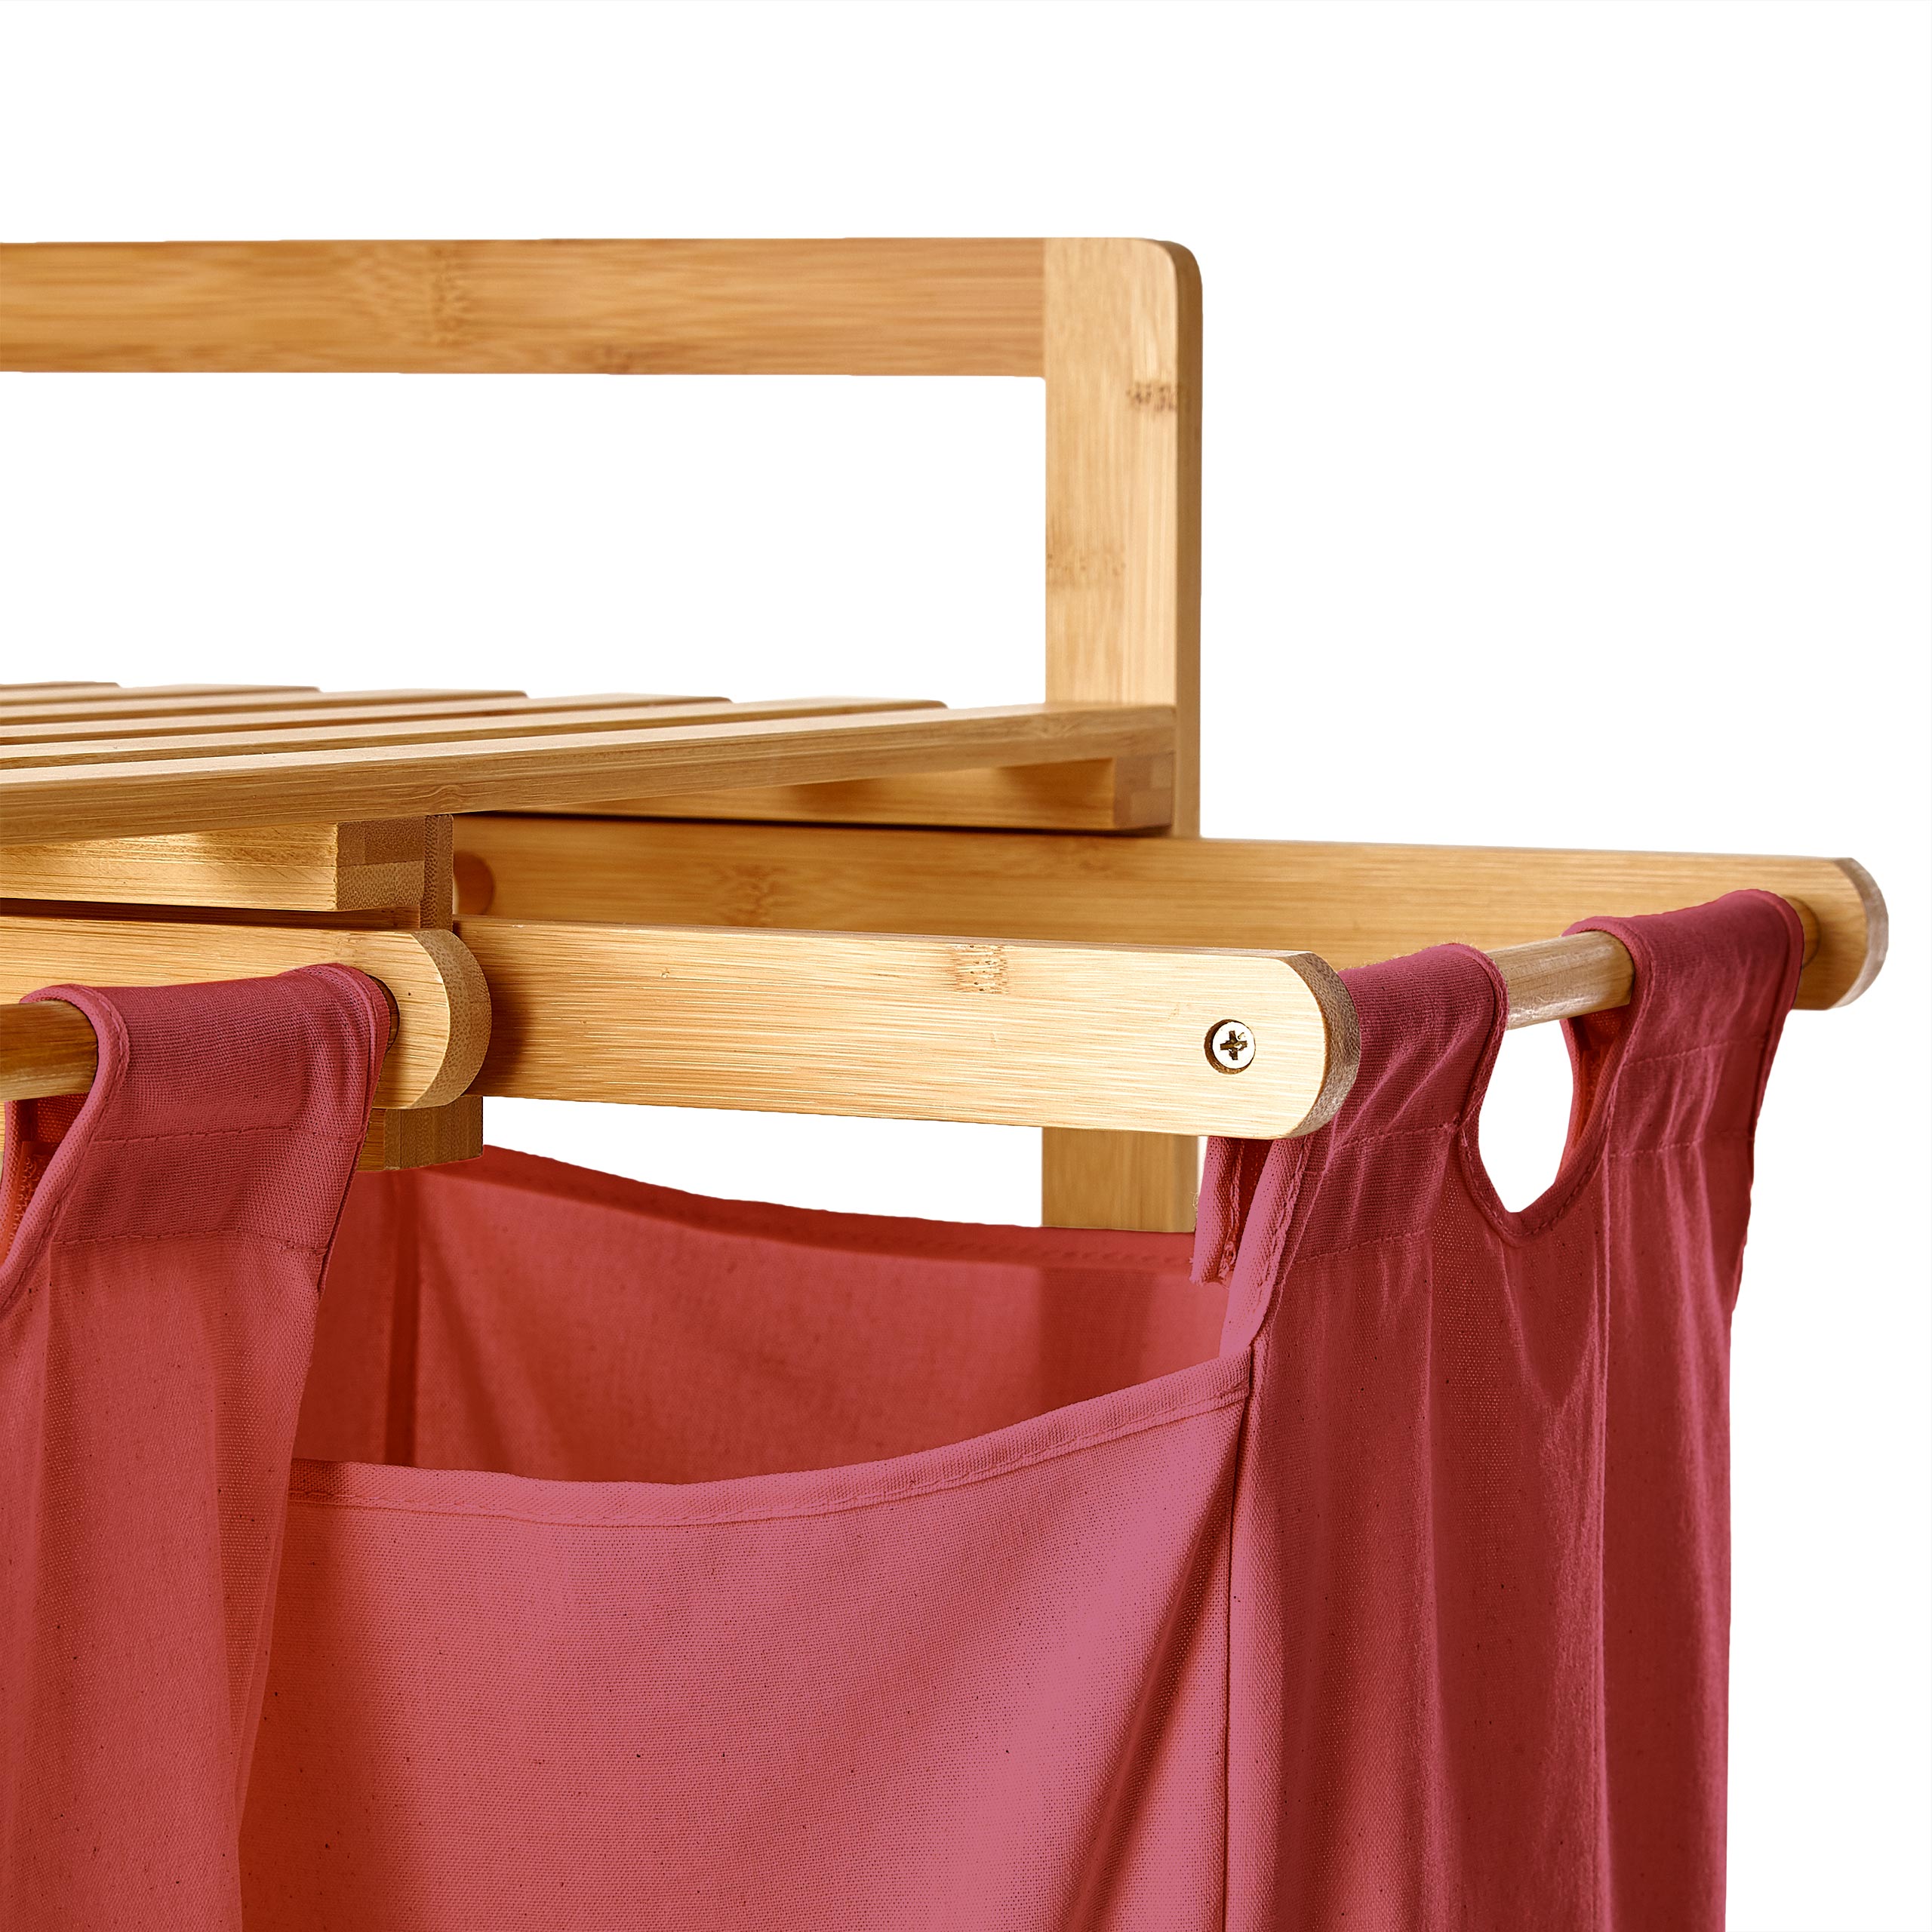 Wäschekorb aus Bambus mit 2 ausziehbaren Wäschesäcken - Größe ca. 73 cm Höhe x 64 cm Breite x 33 cm Tiefe - Farbe Rosa